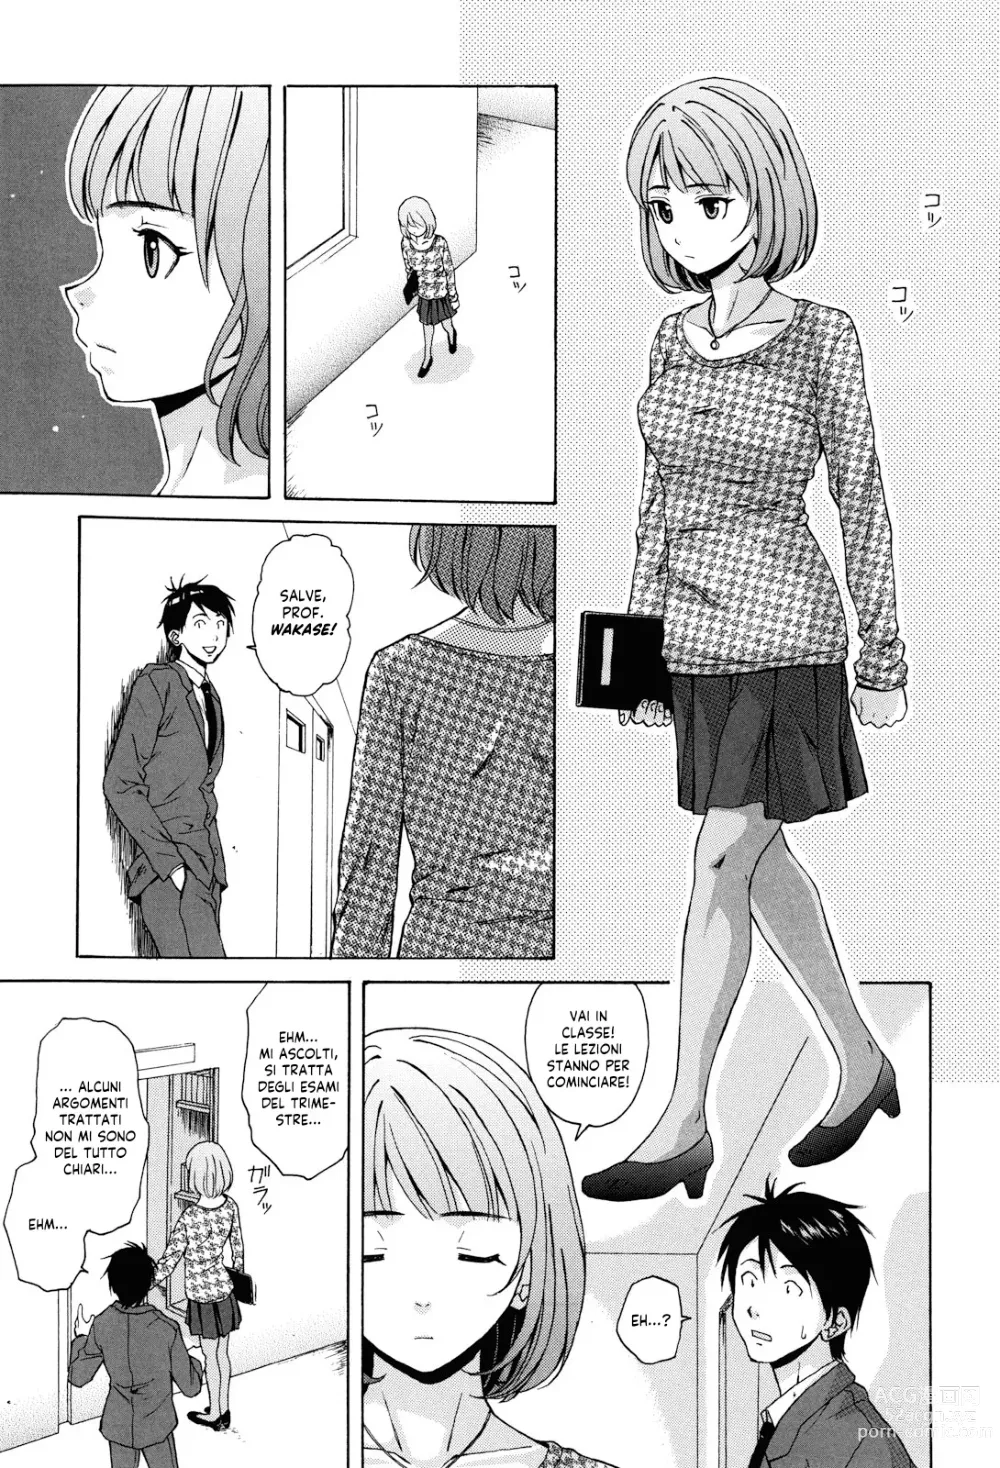 Page 6 of manga Sei Gentilmente Desiderato dalla tua Prof (decensored)